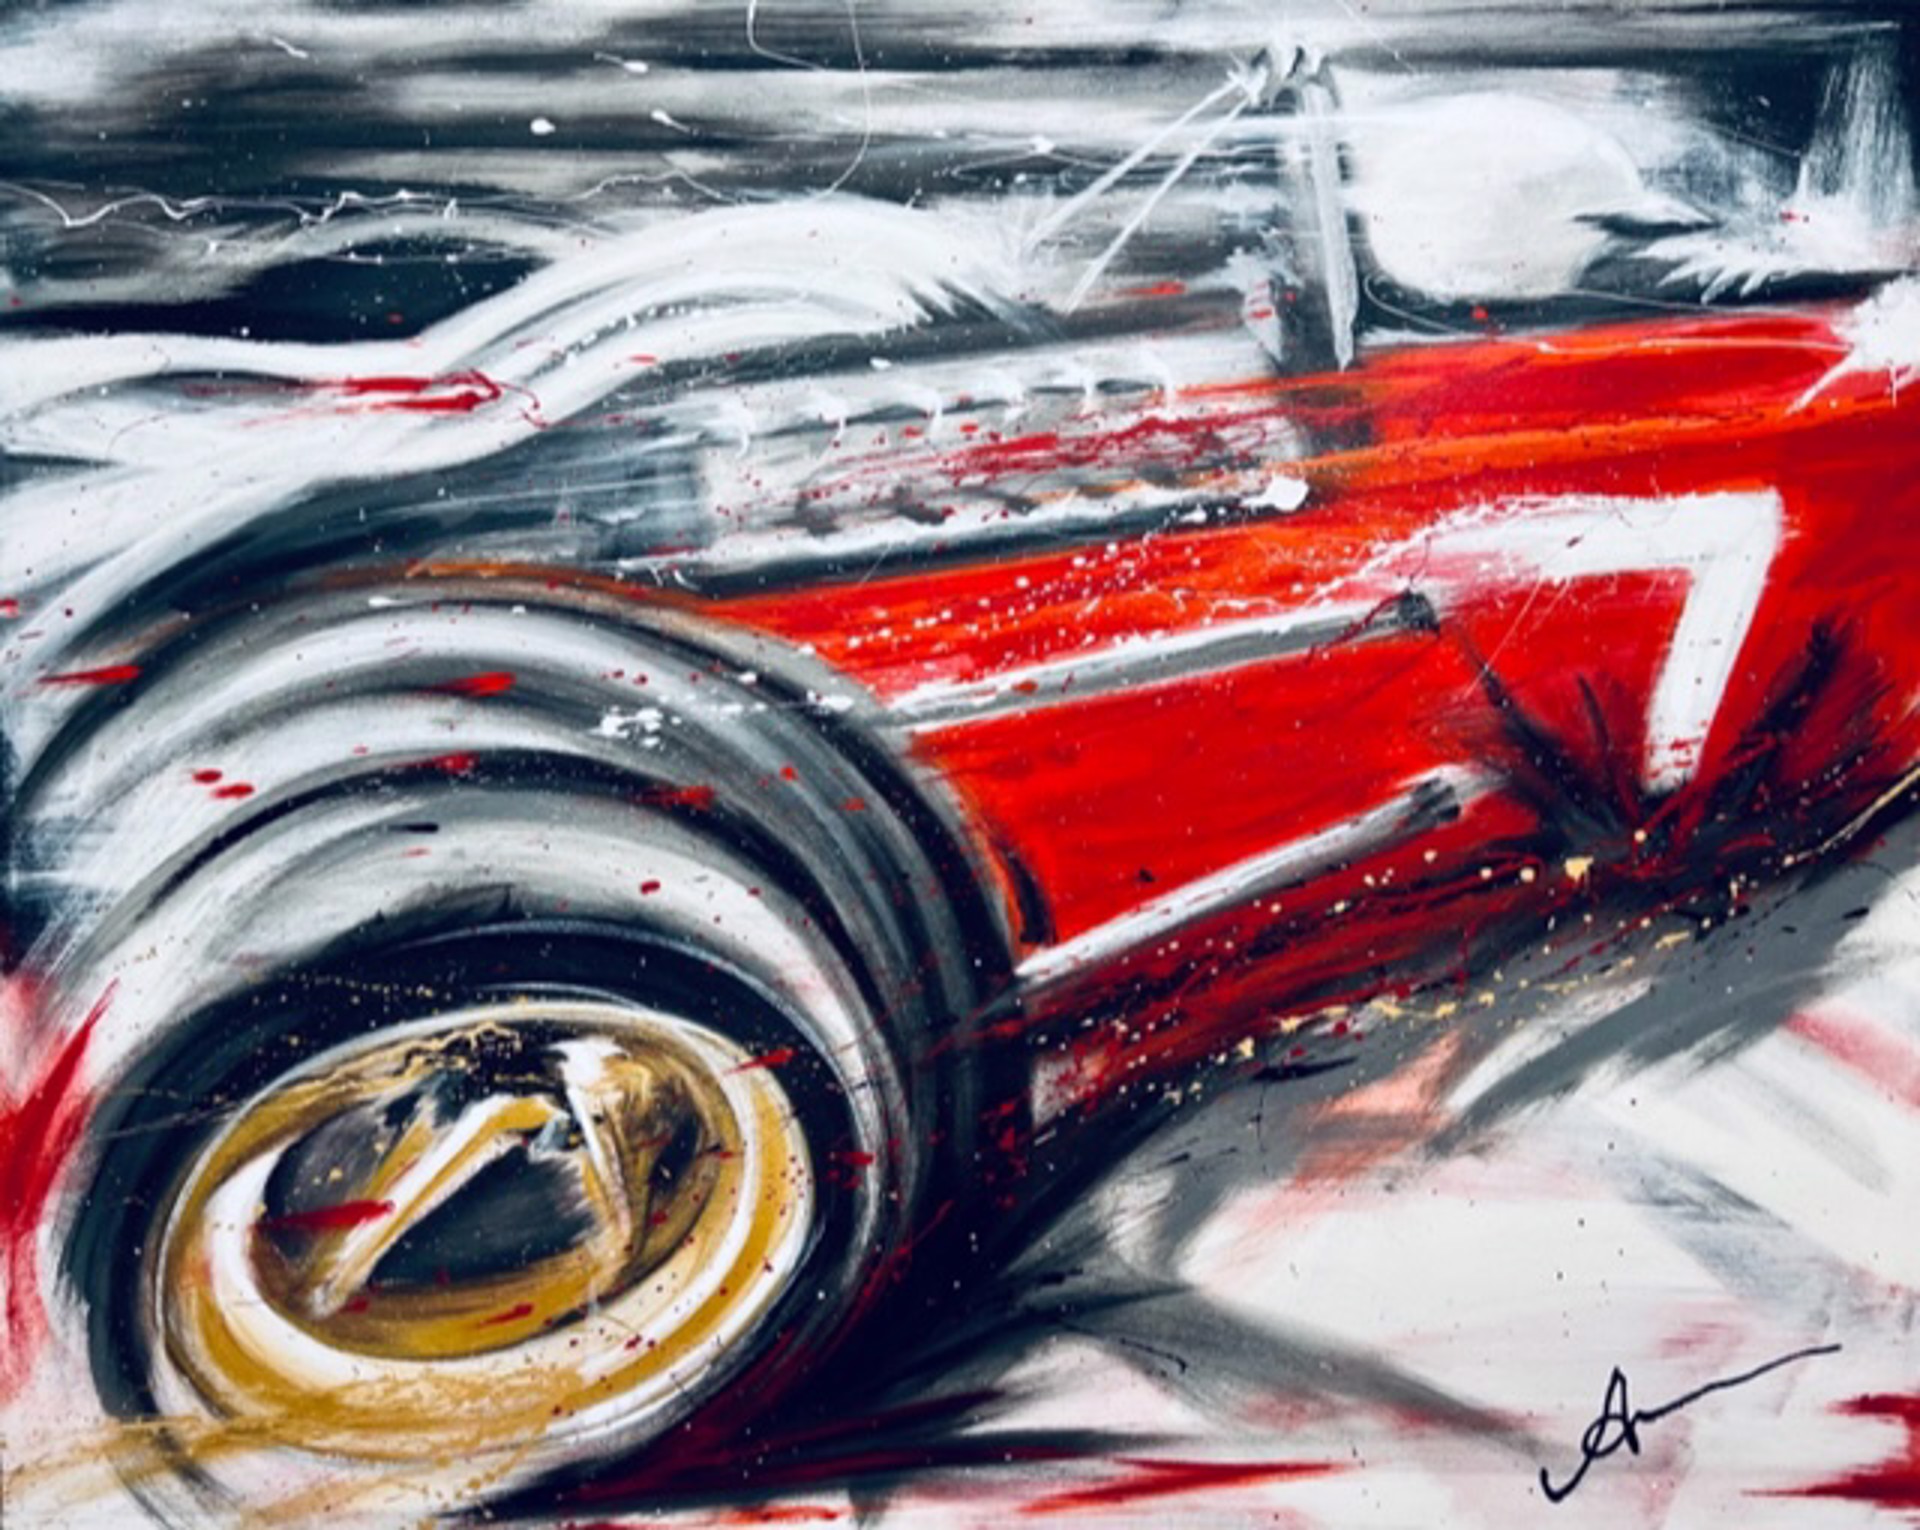 Ferrari 312/67 F1 by Andreas Somogyi